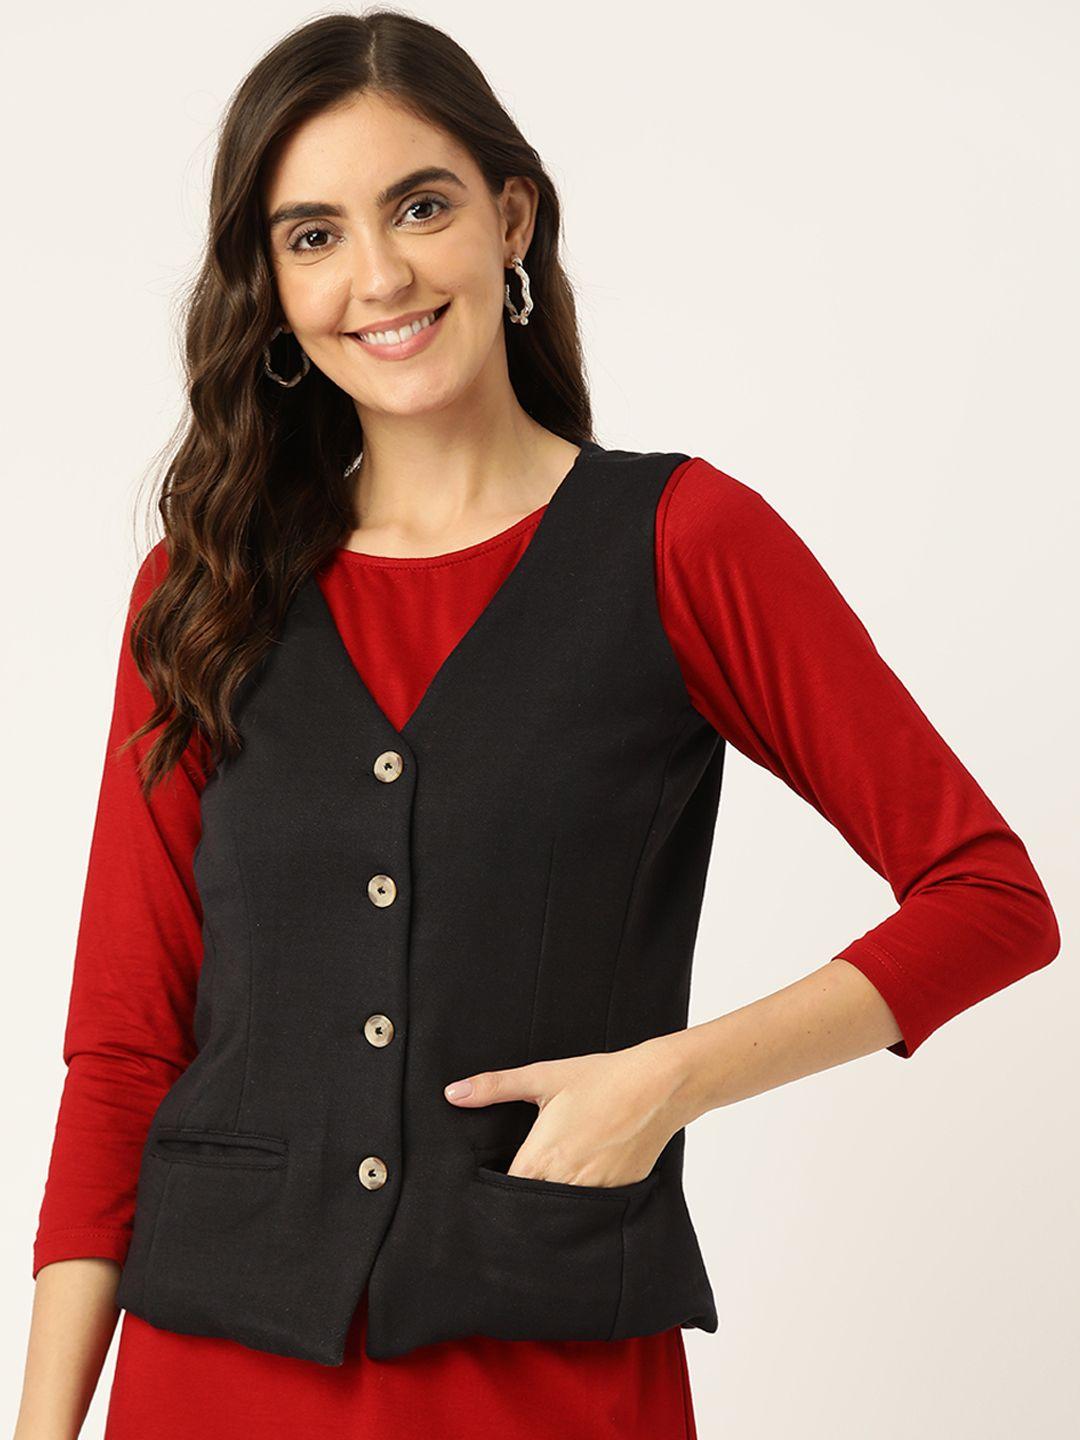 brinns v-neck knitted waistcoat